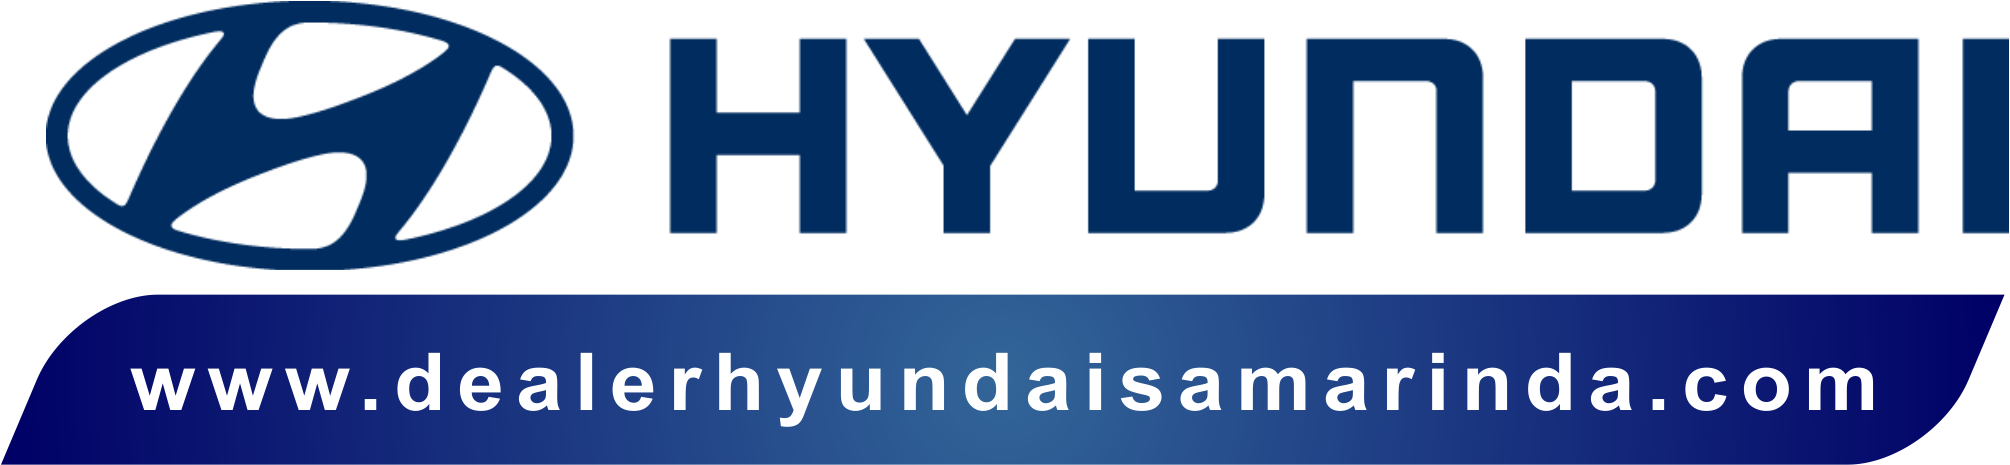 Dealer Hyundai Samarinda